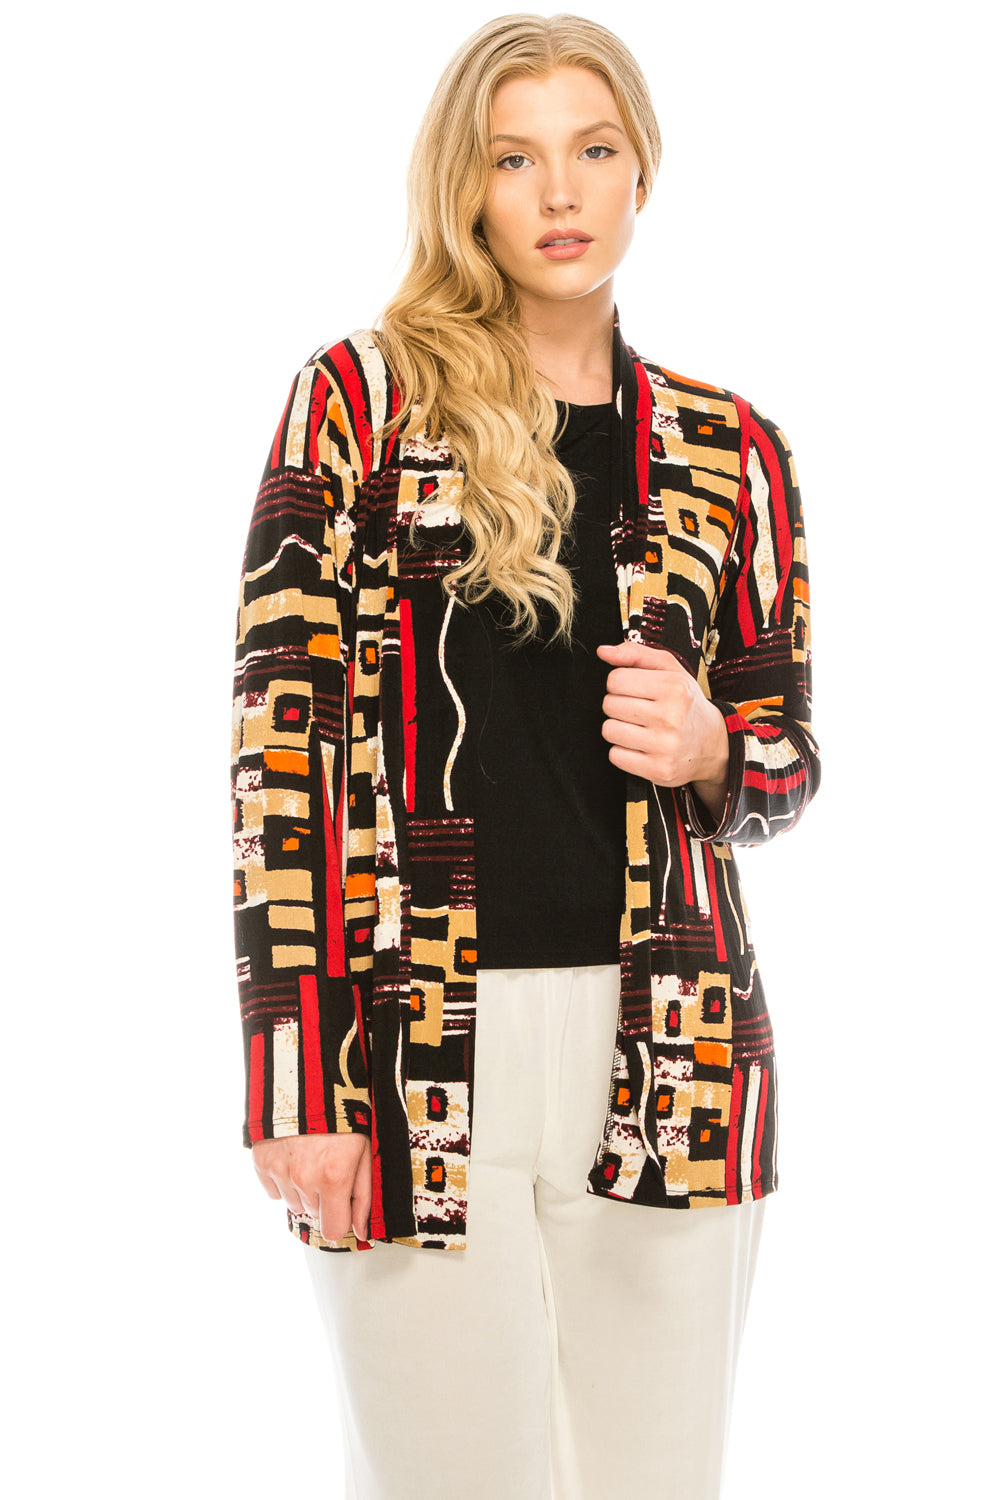 Jostar Women's Stretchy Drape Jacket Long Sleeve Plus, 404BN-LP-W186 - Jostar Online